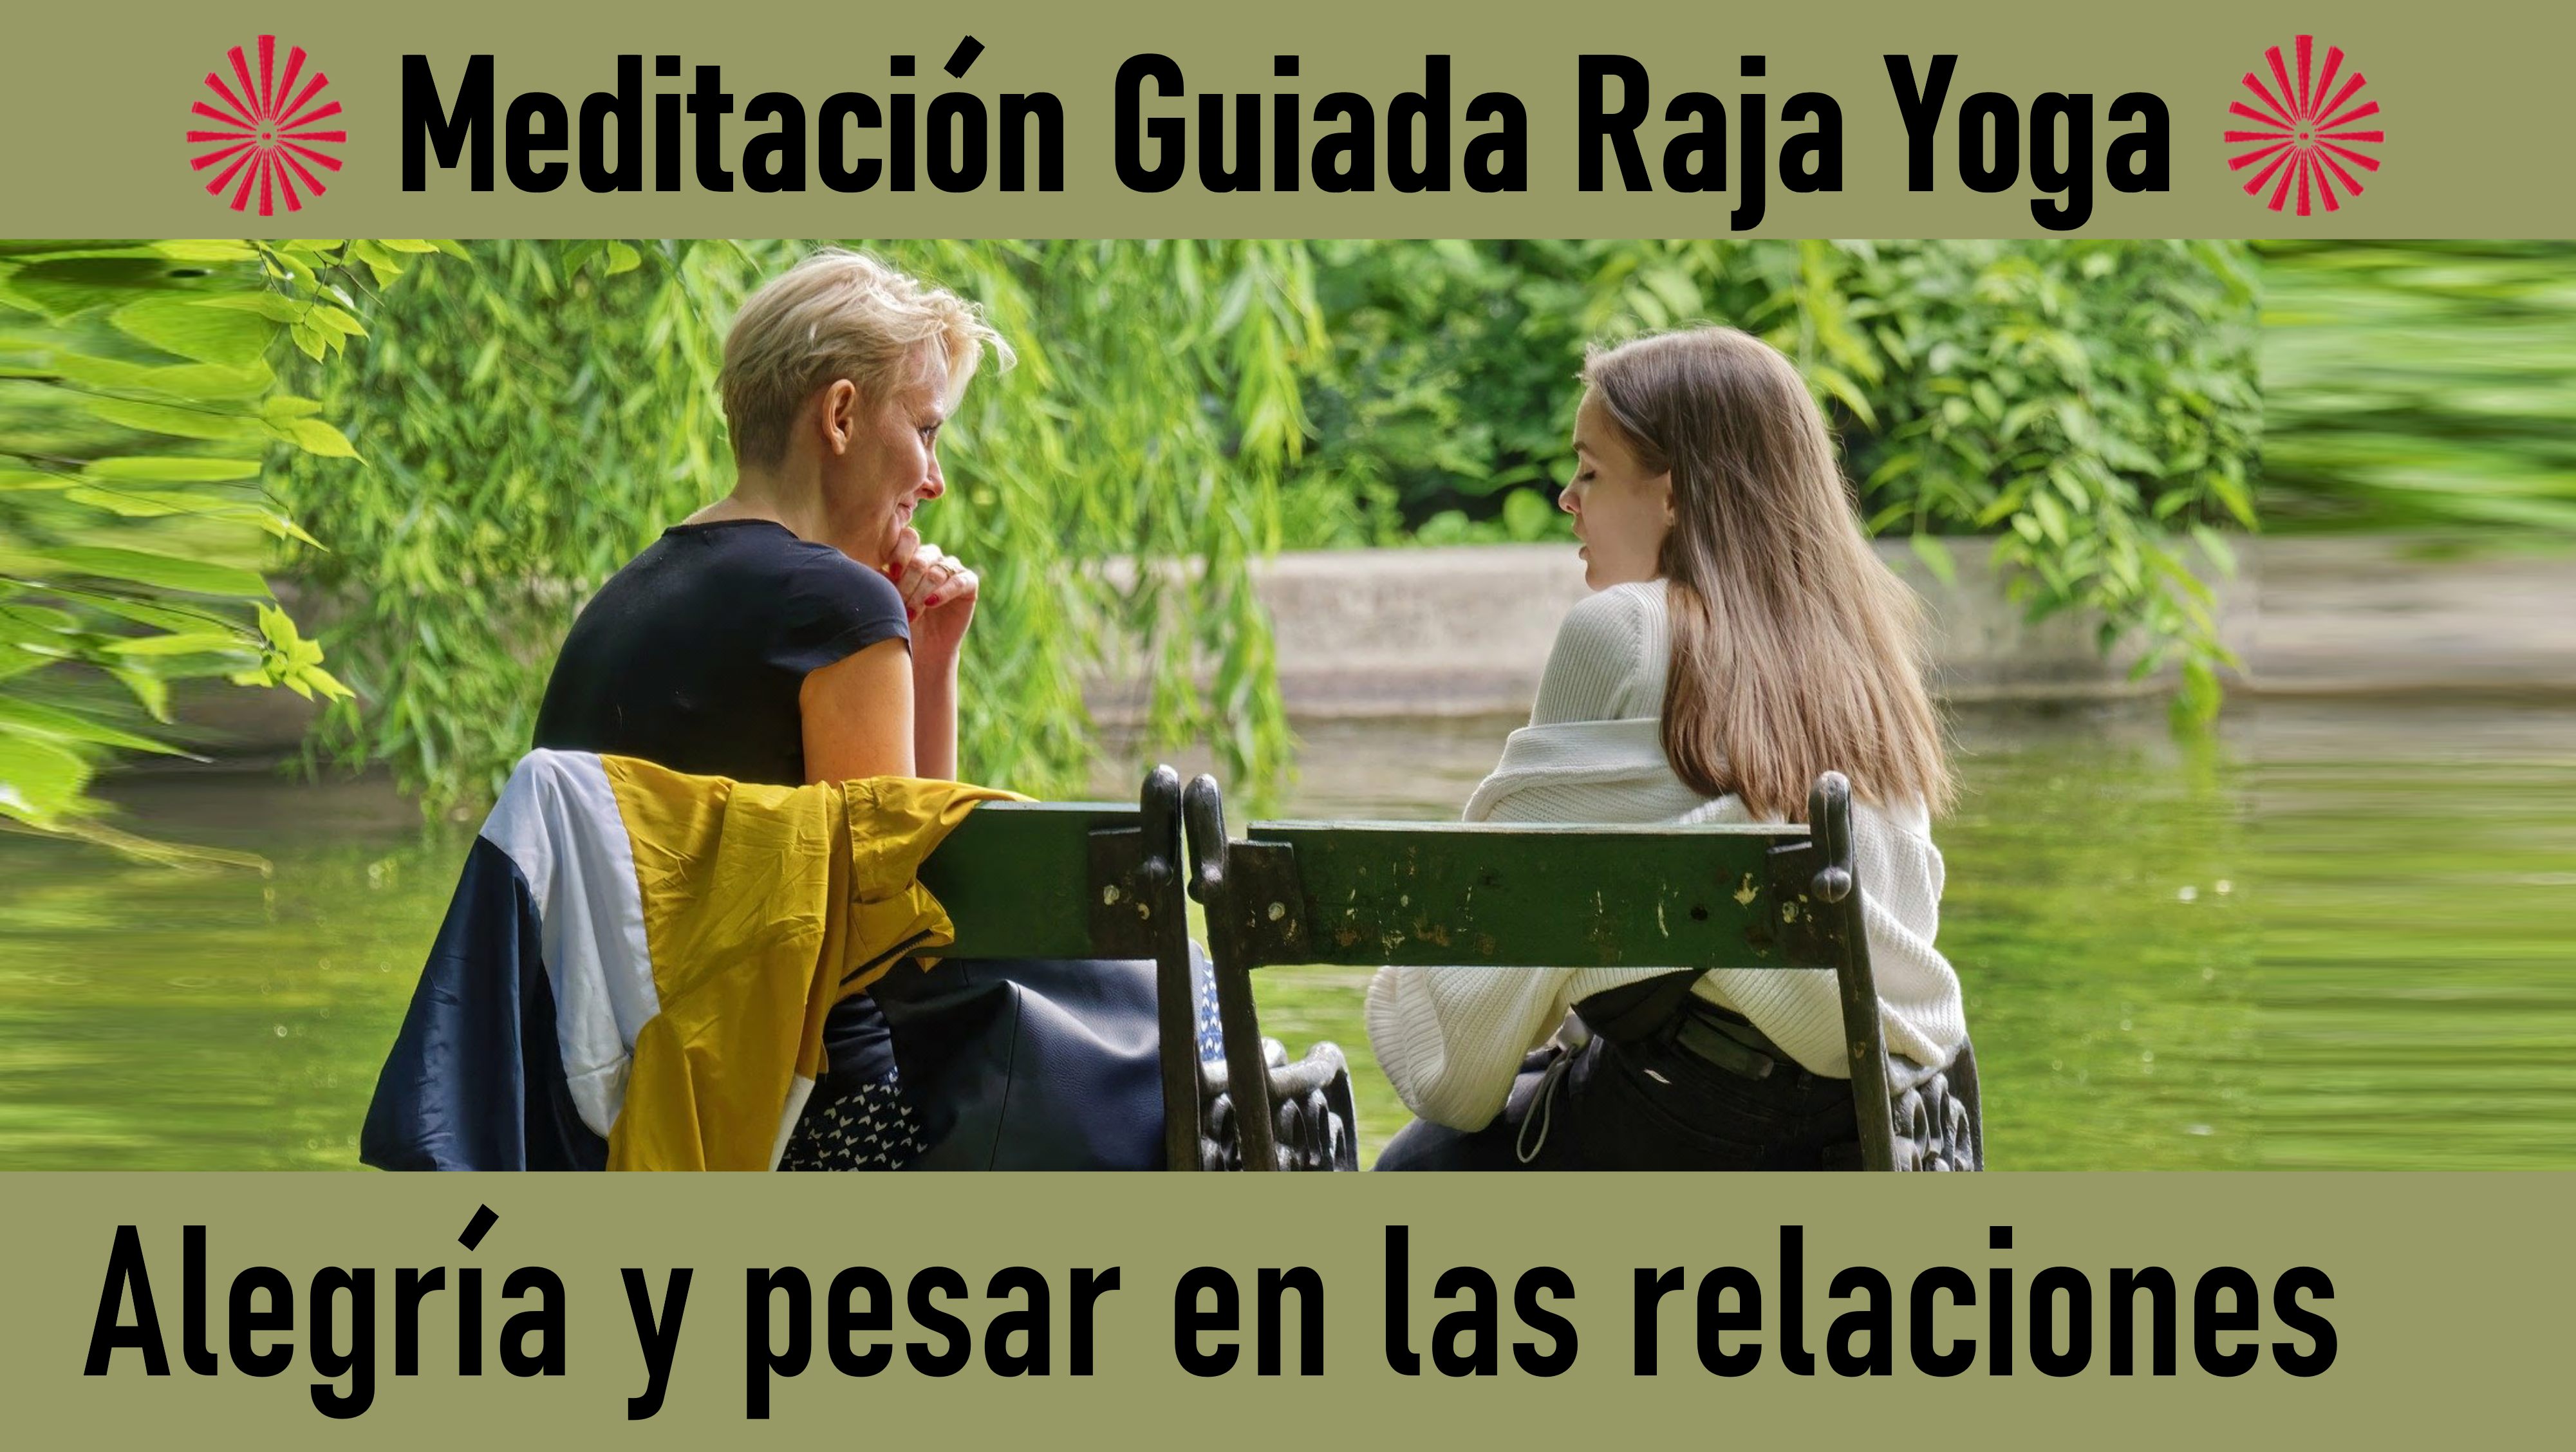 Meditación Raja Yoga: Alegría y pesar en las relaciones (11 Julio 2020) On-line desde Valencia